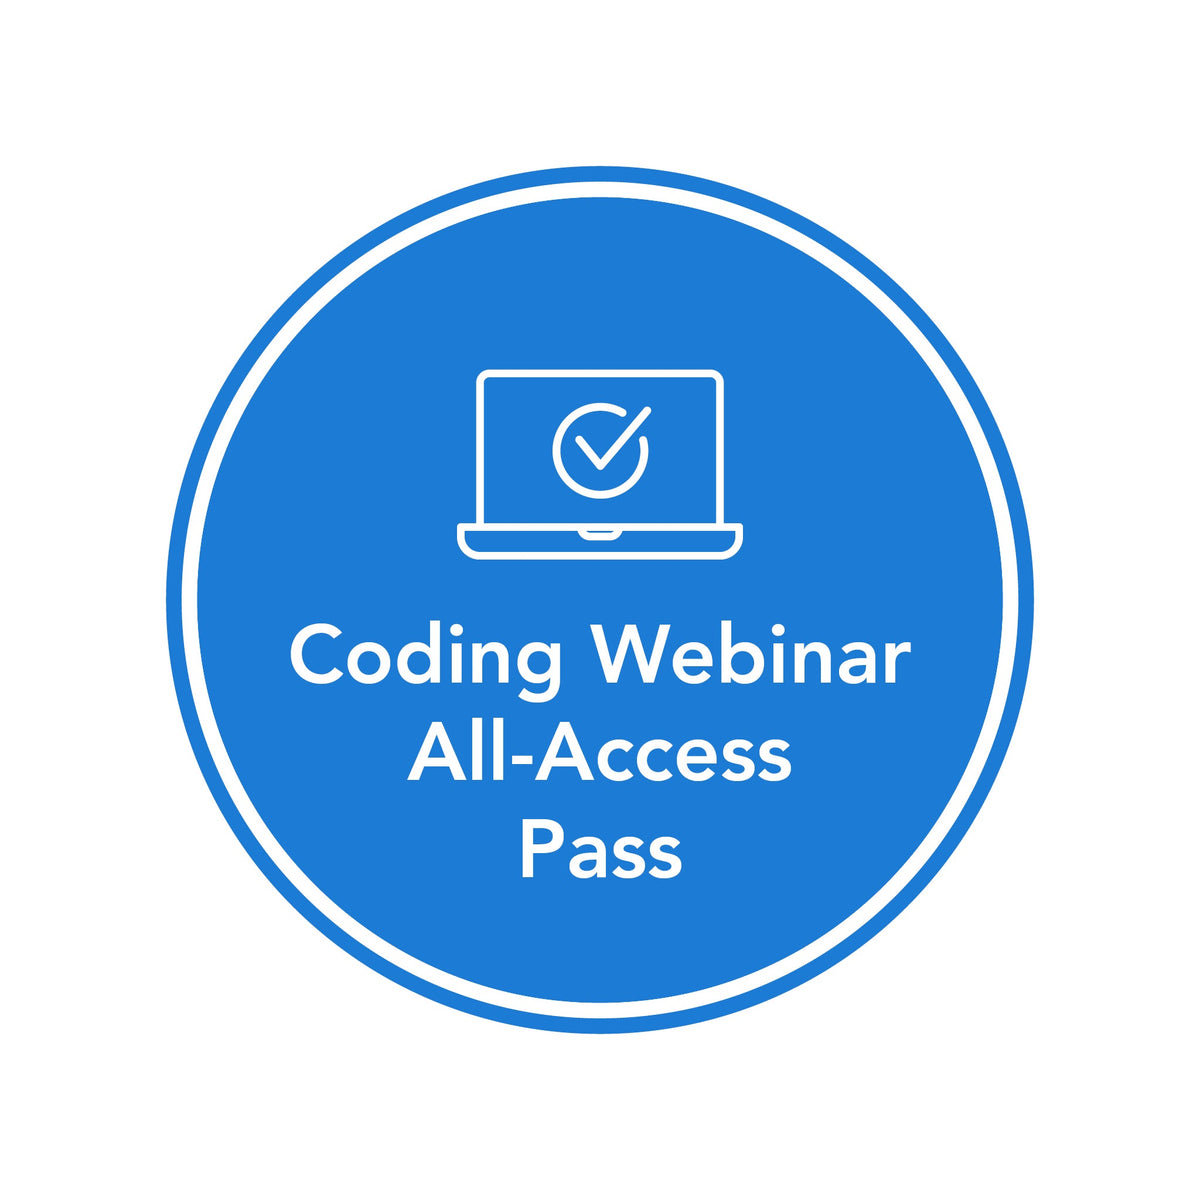 Coding Webinar All-Access Pass